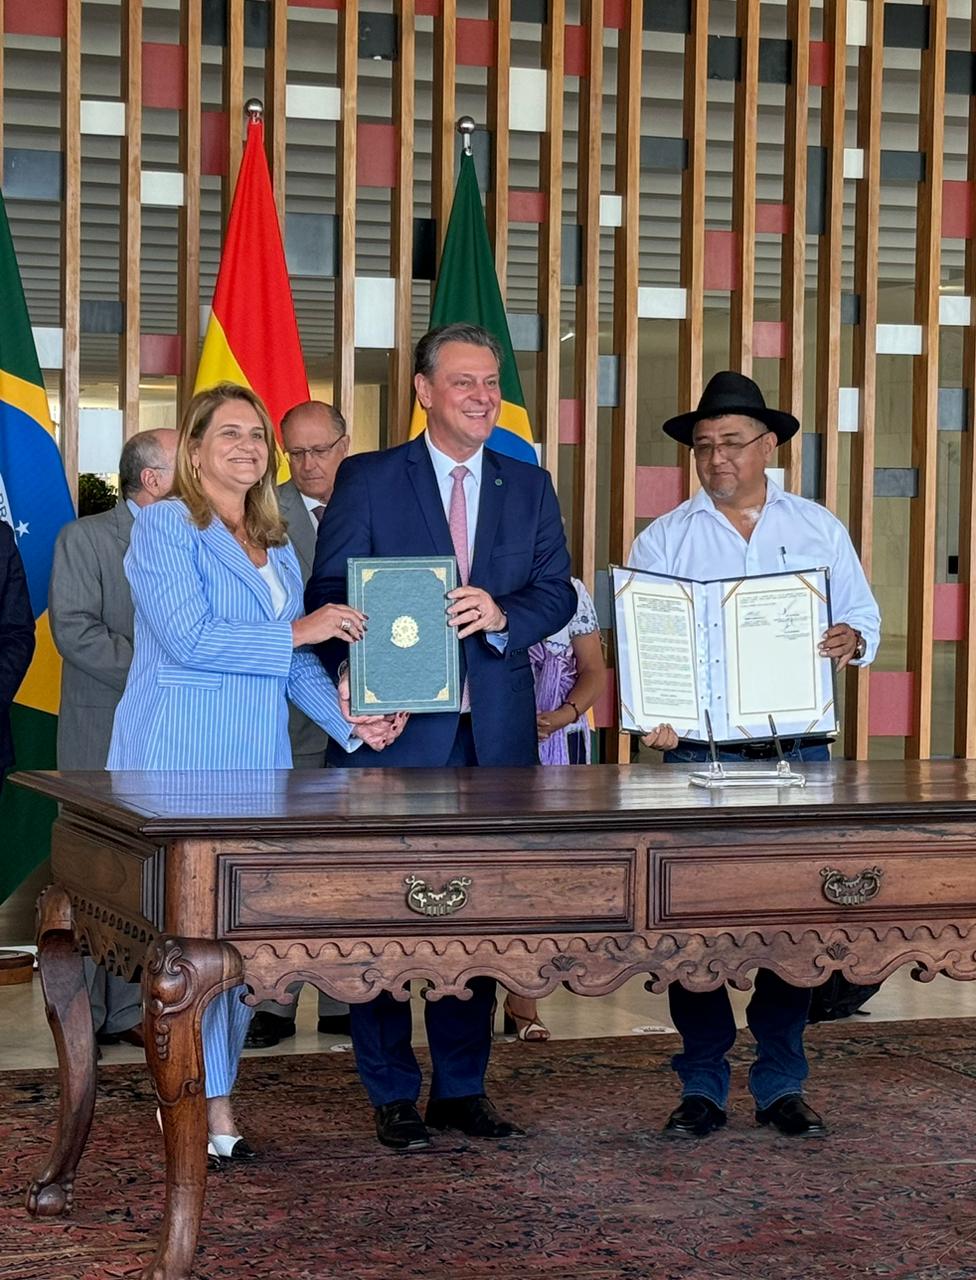 Memorando de entendimento propõe ampliar cooperação técnica e científica entre Brasil e Bolívia